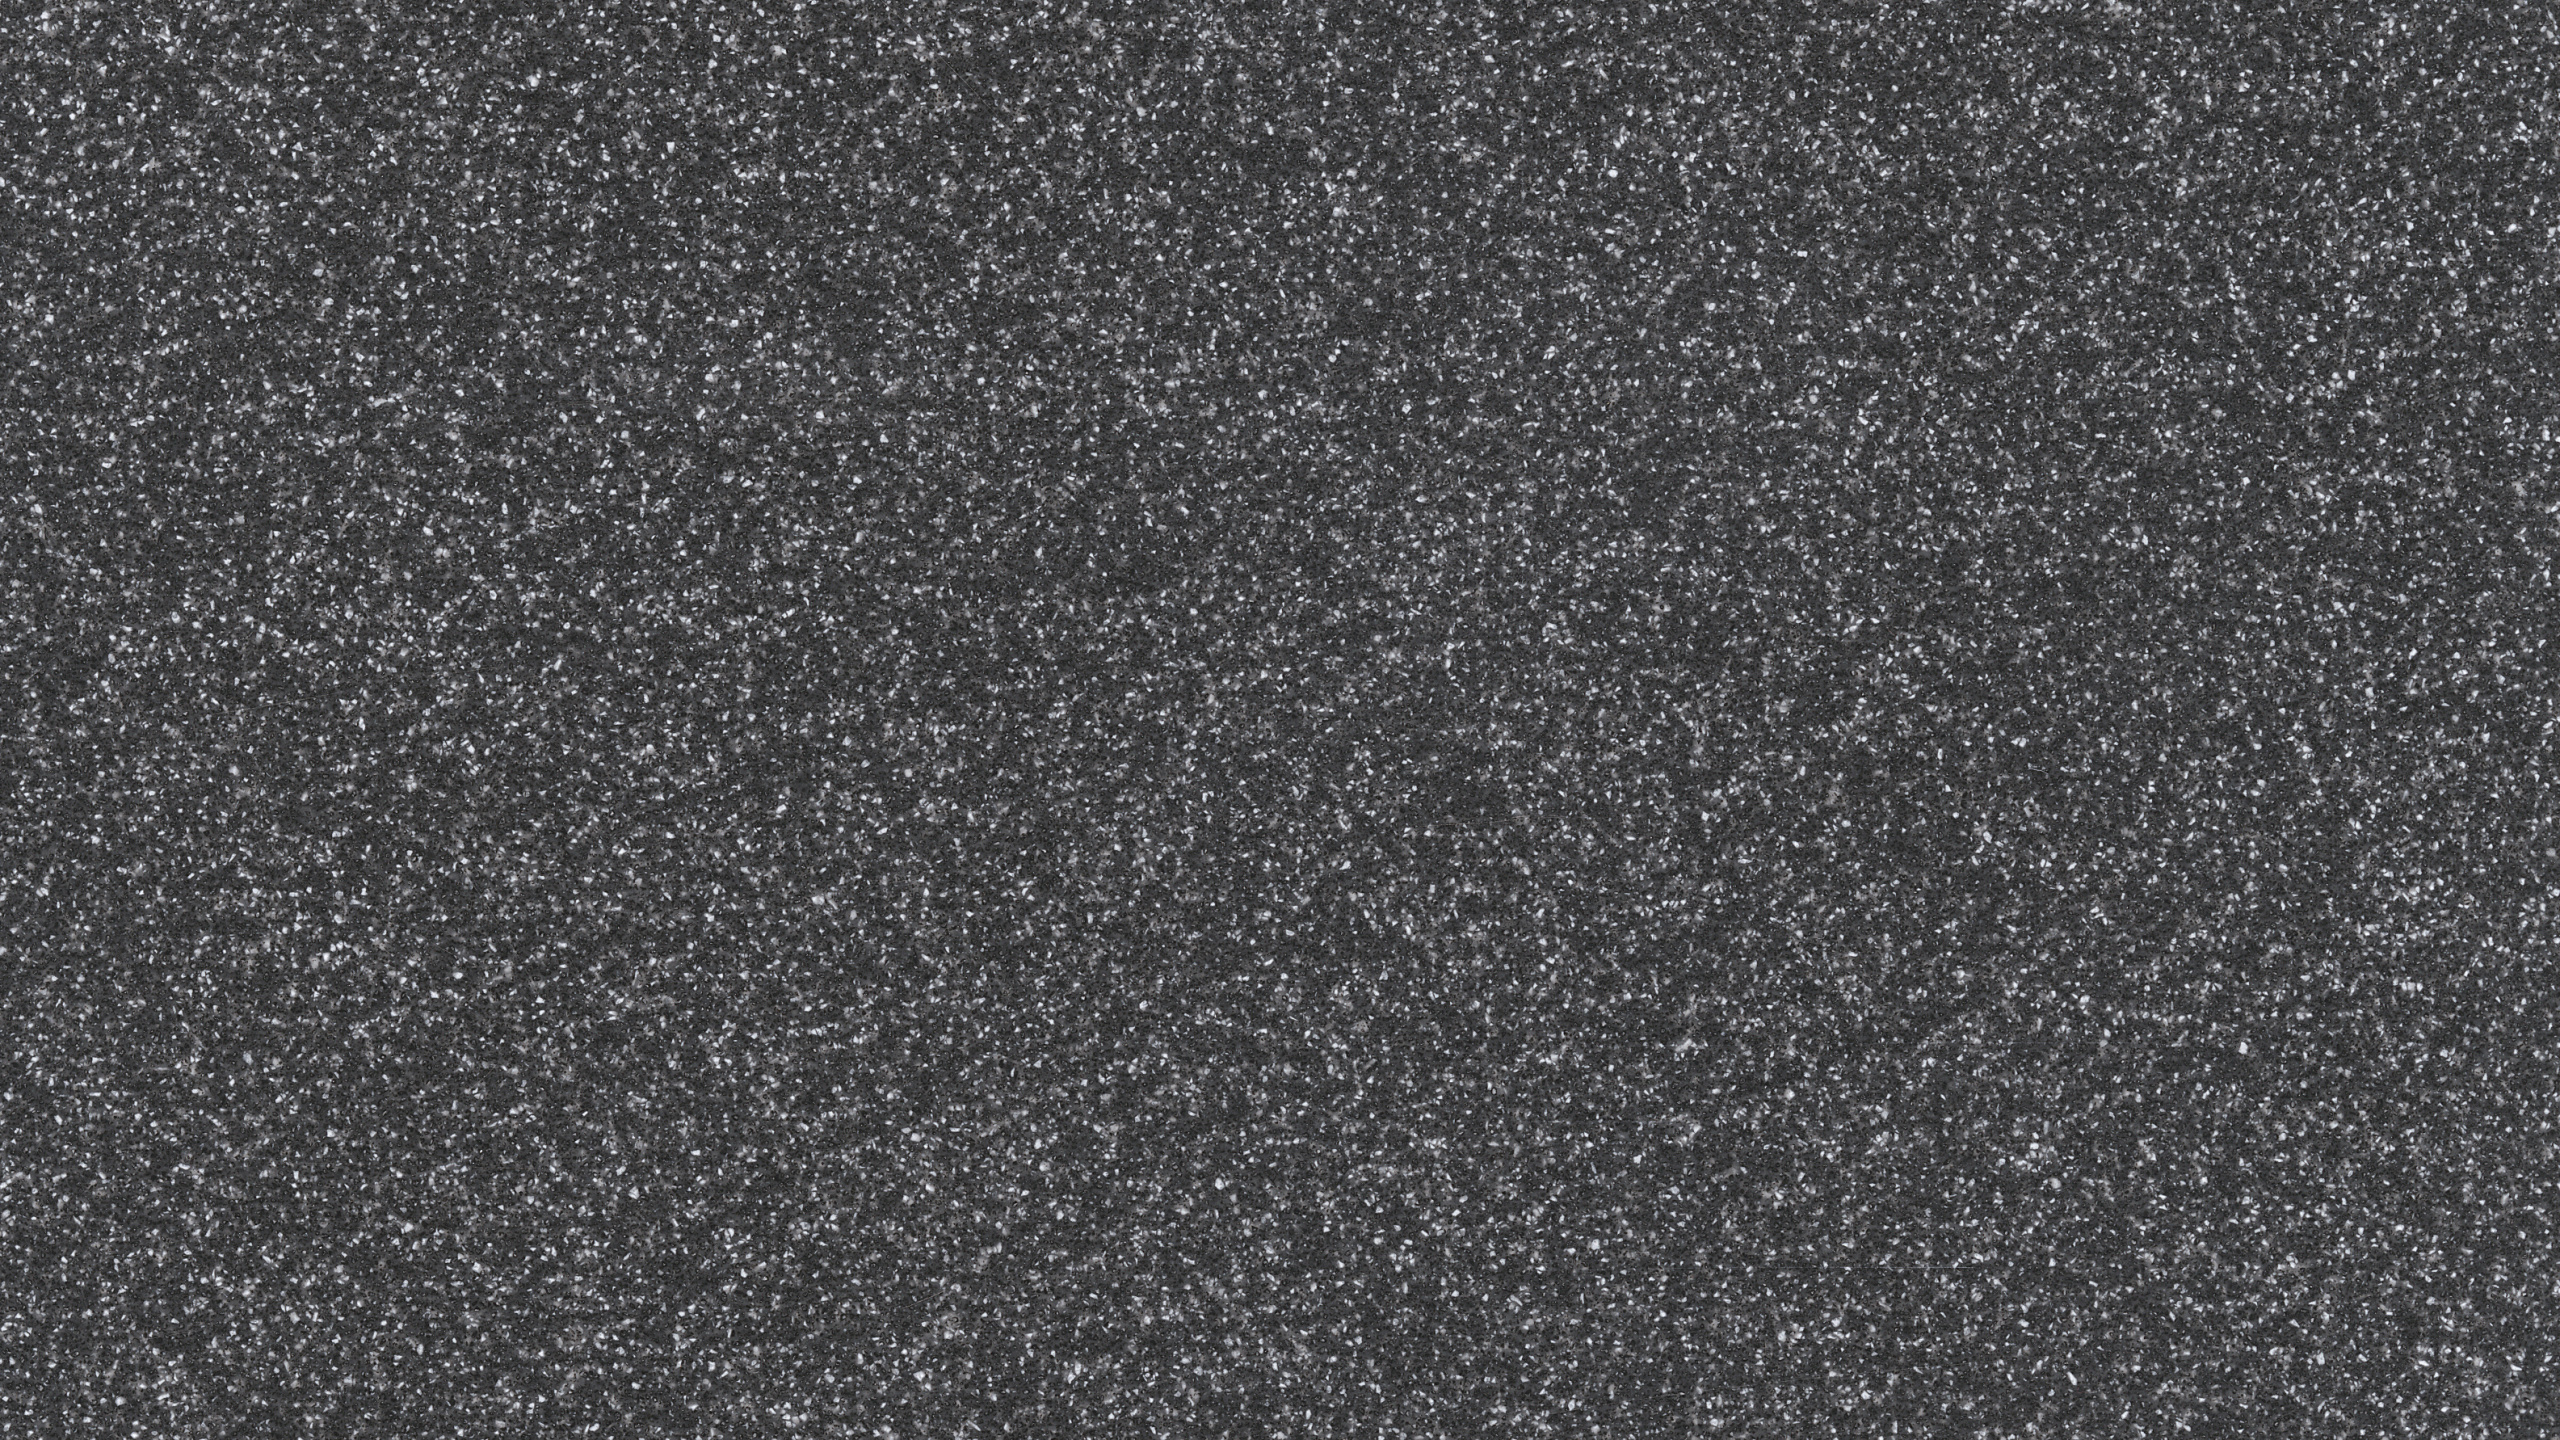 Textil de Lunares en Blanco y Negro. Wallpaper in 2560x1440 Resolution